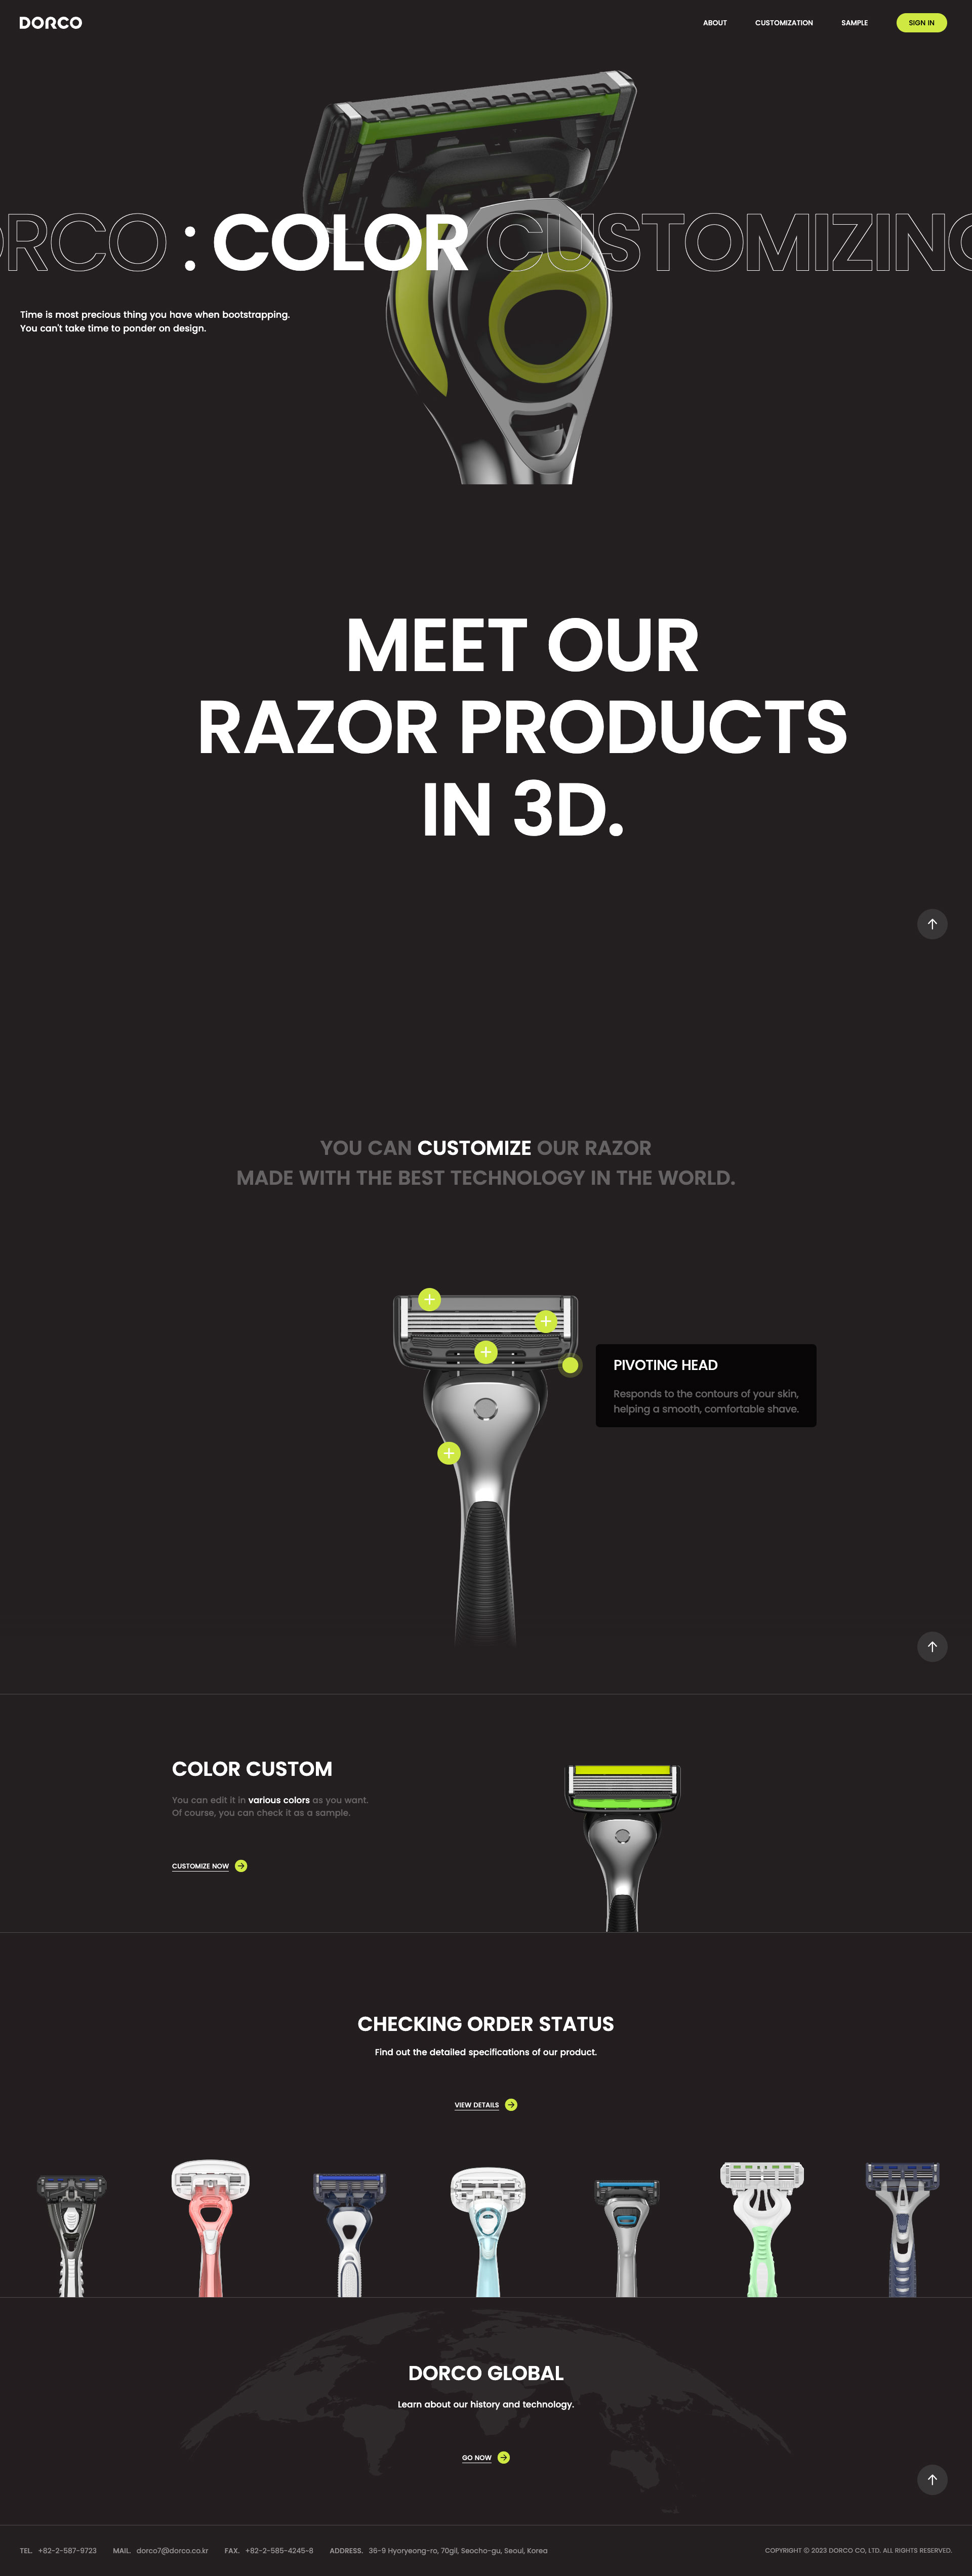 도루코 제품 브랜드 홈페이지 데스크톱 화면